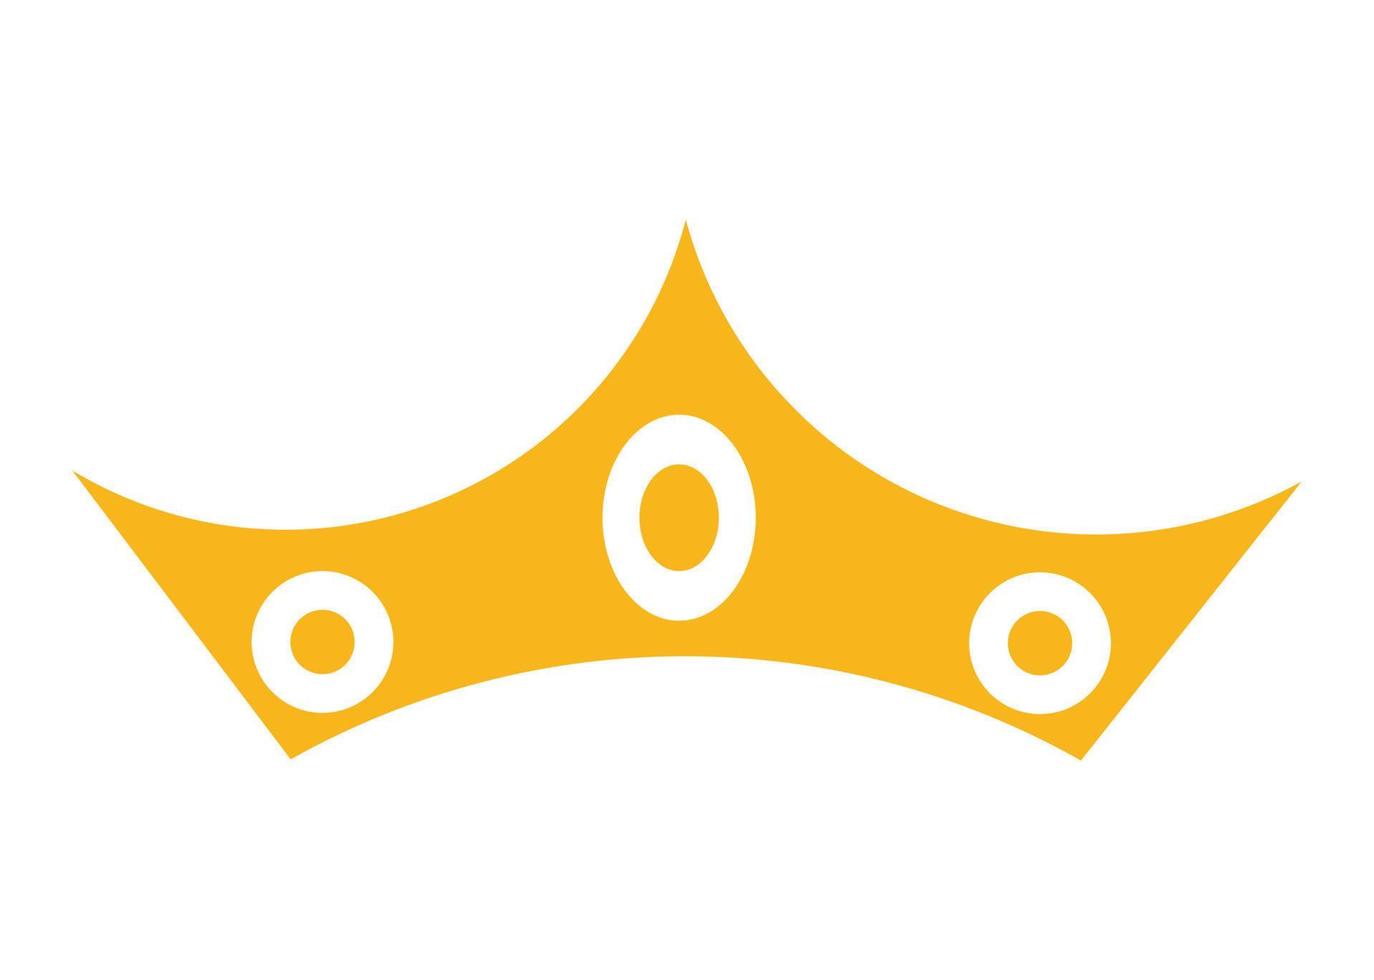 crown shape icon or symbol design vector